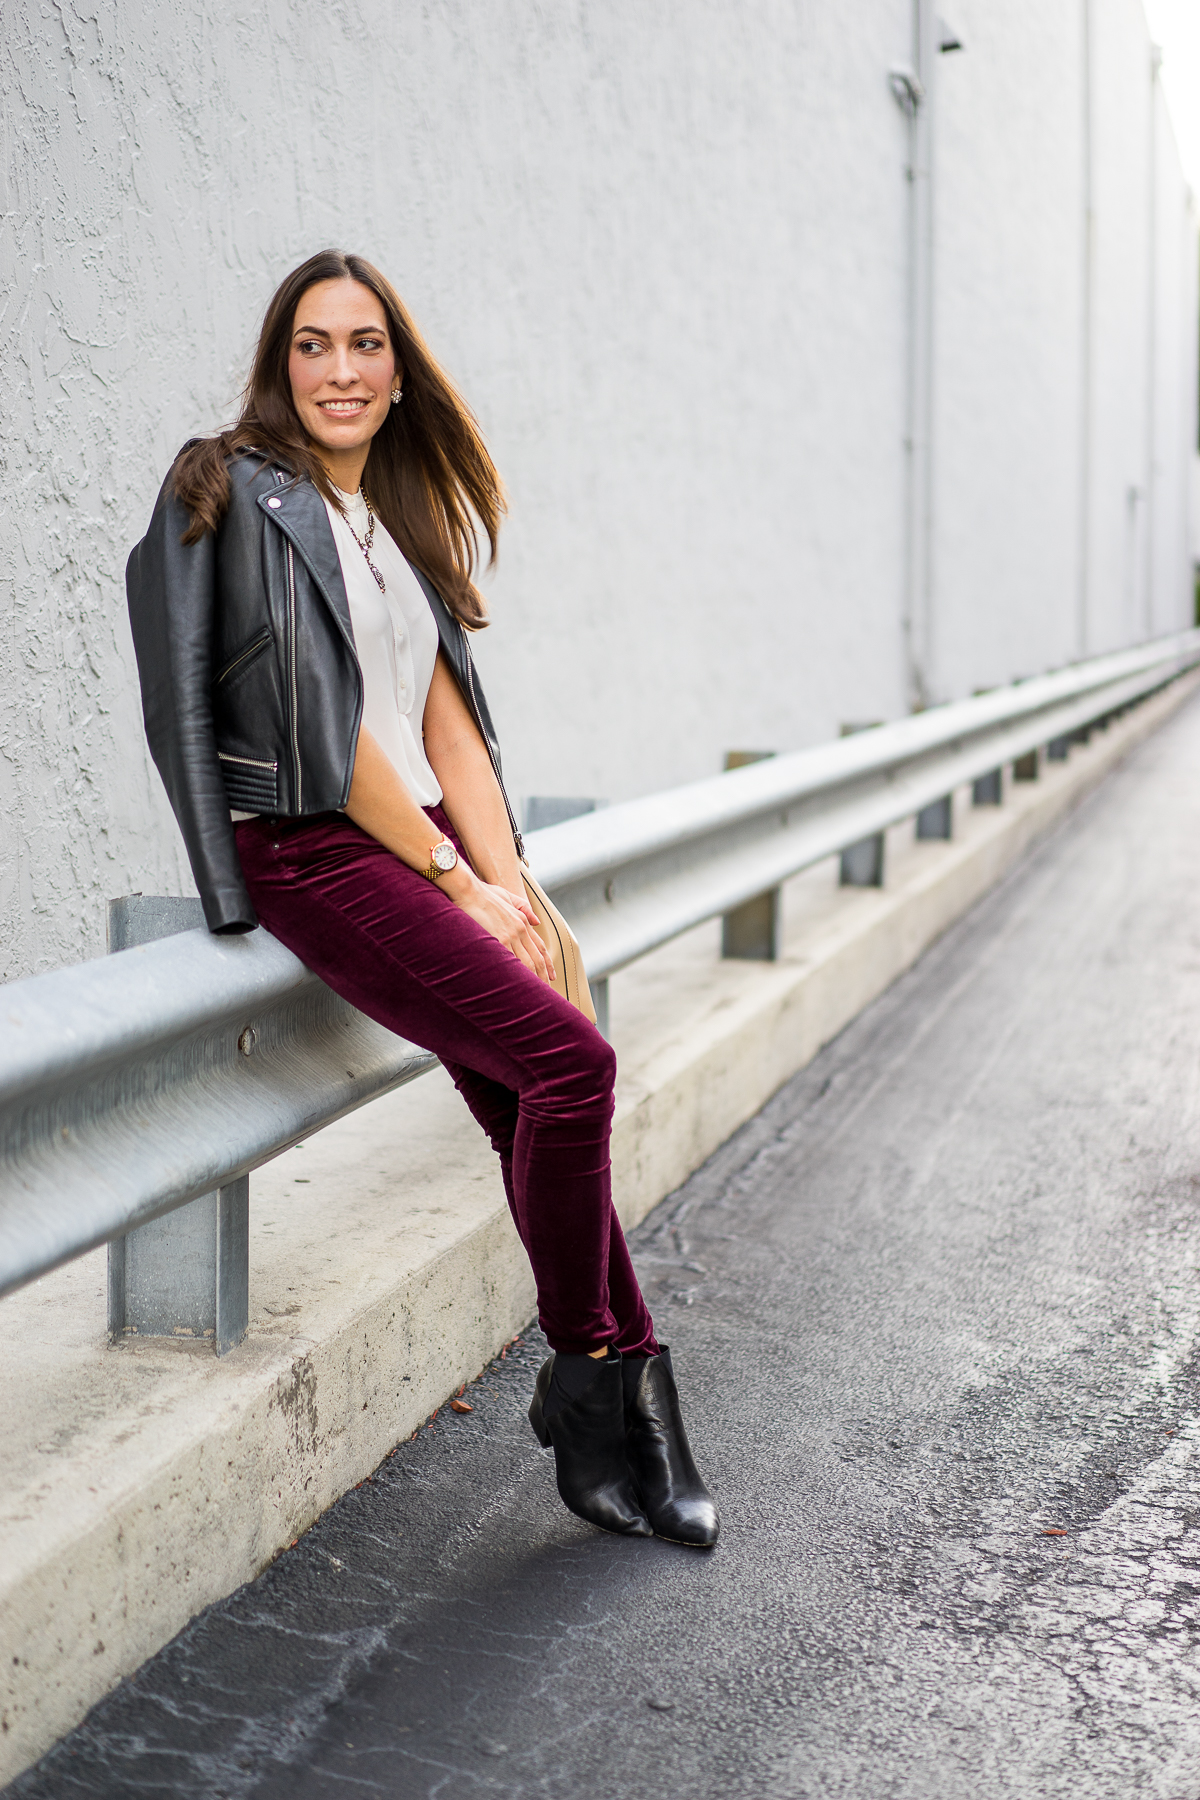 AG Velvet Legging aanbevolen door top FL fashion blogger, Een Glamoureuze Levensstijl: beeld van een vrouw met AG super skinny velvet legging